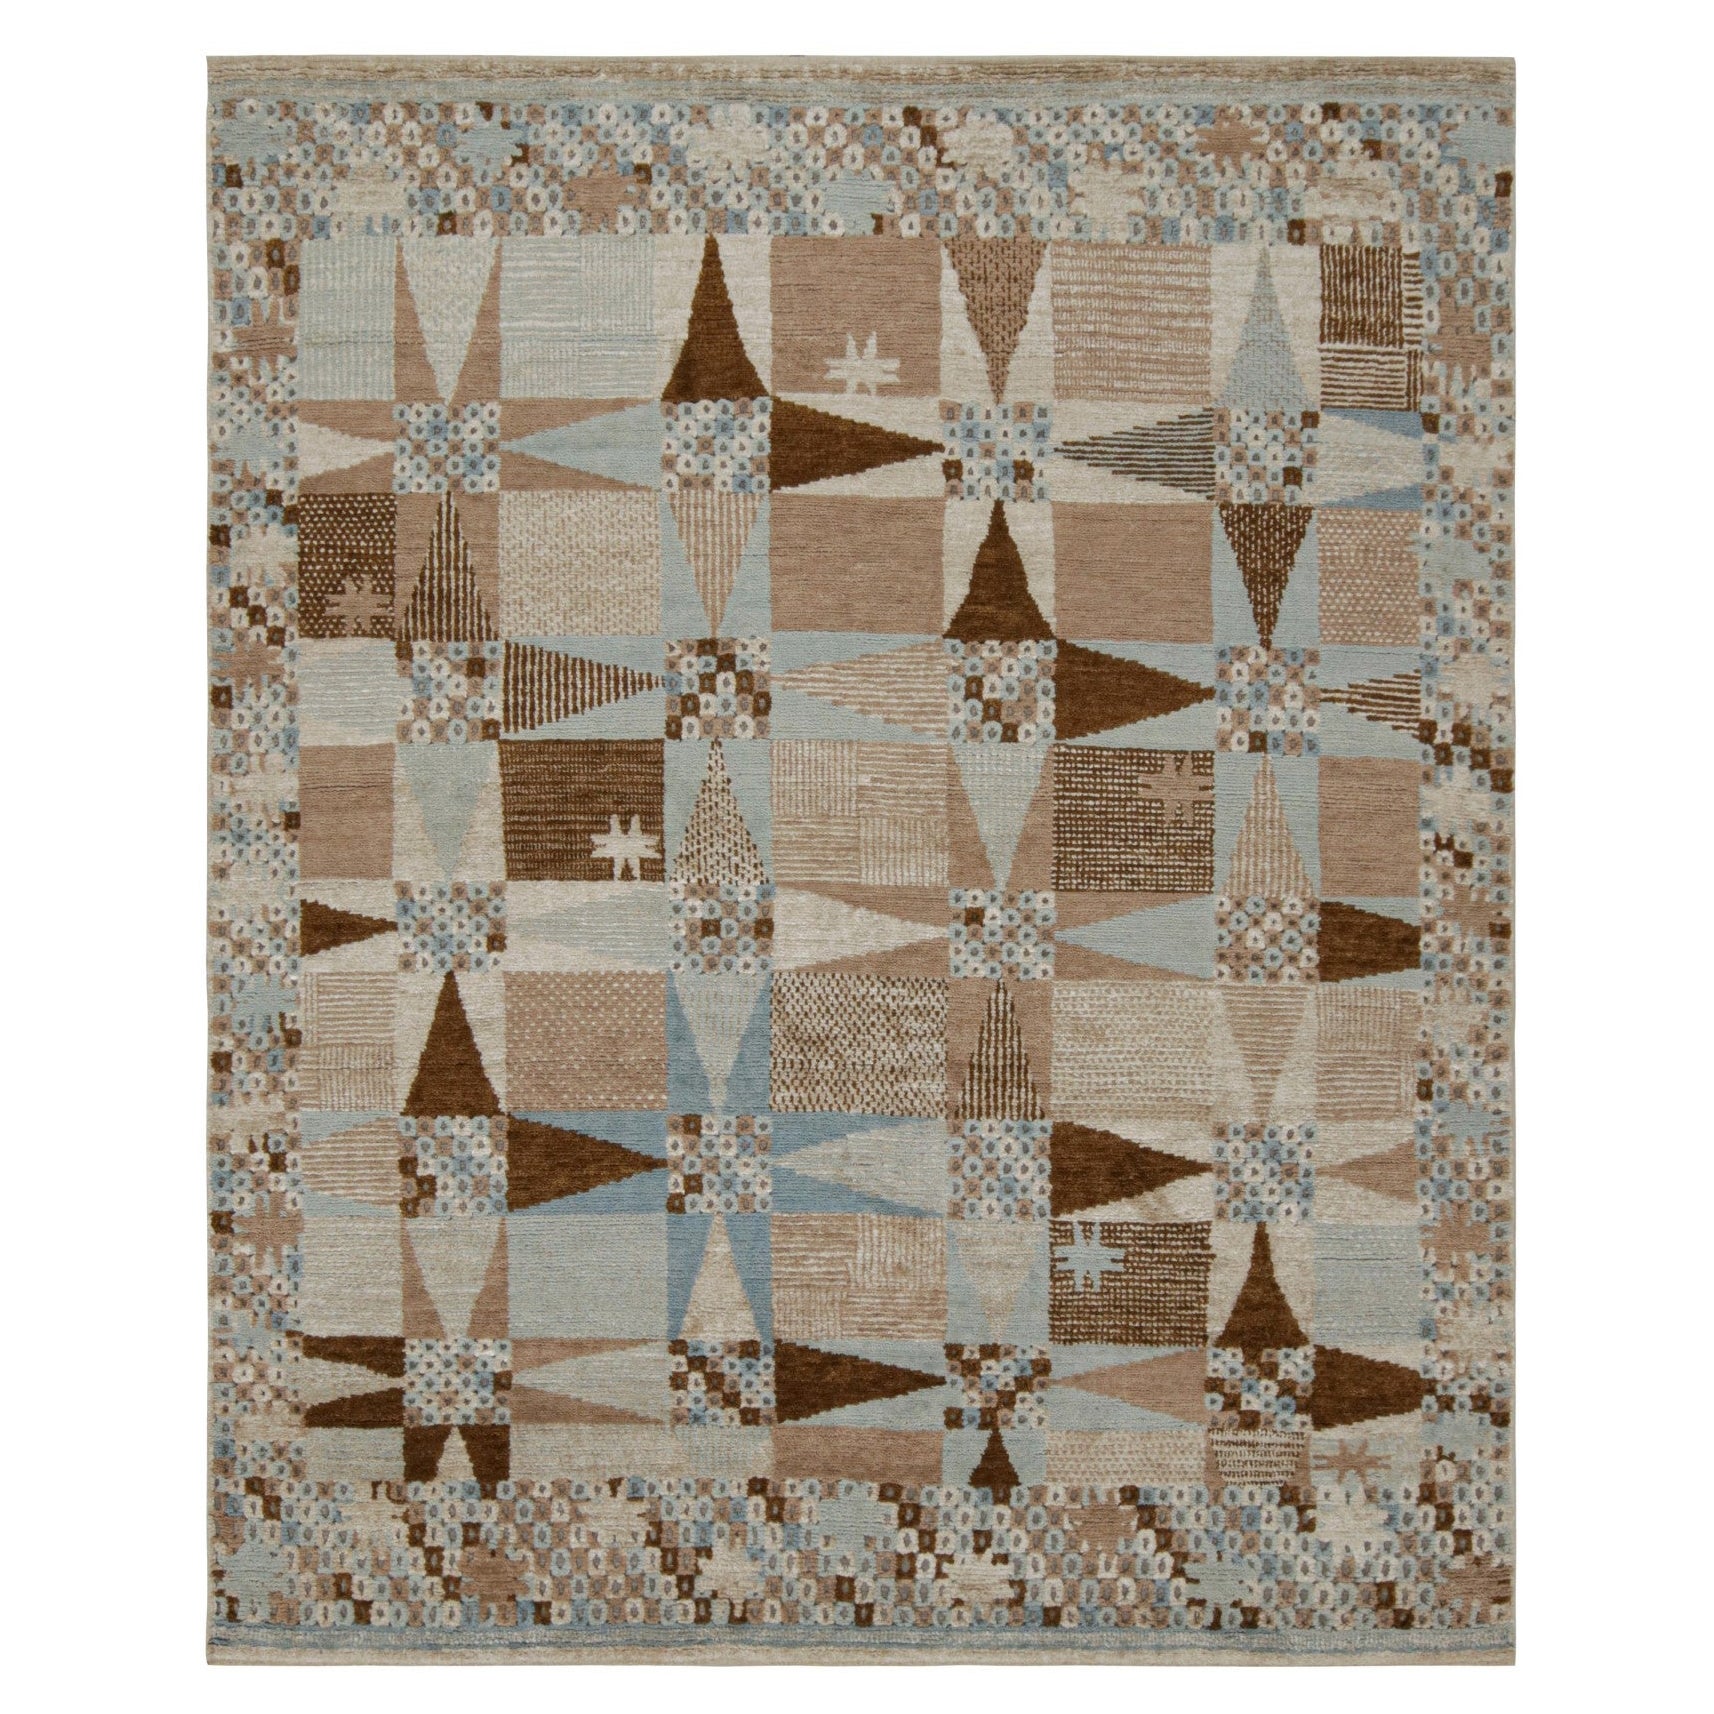 Rug & Kilim's Oushak Style Teppich mit geometrischen Mustern in Brown und Rust Tones